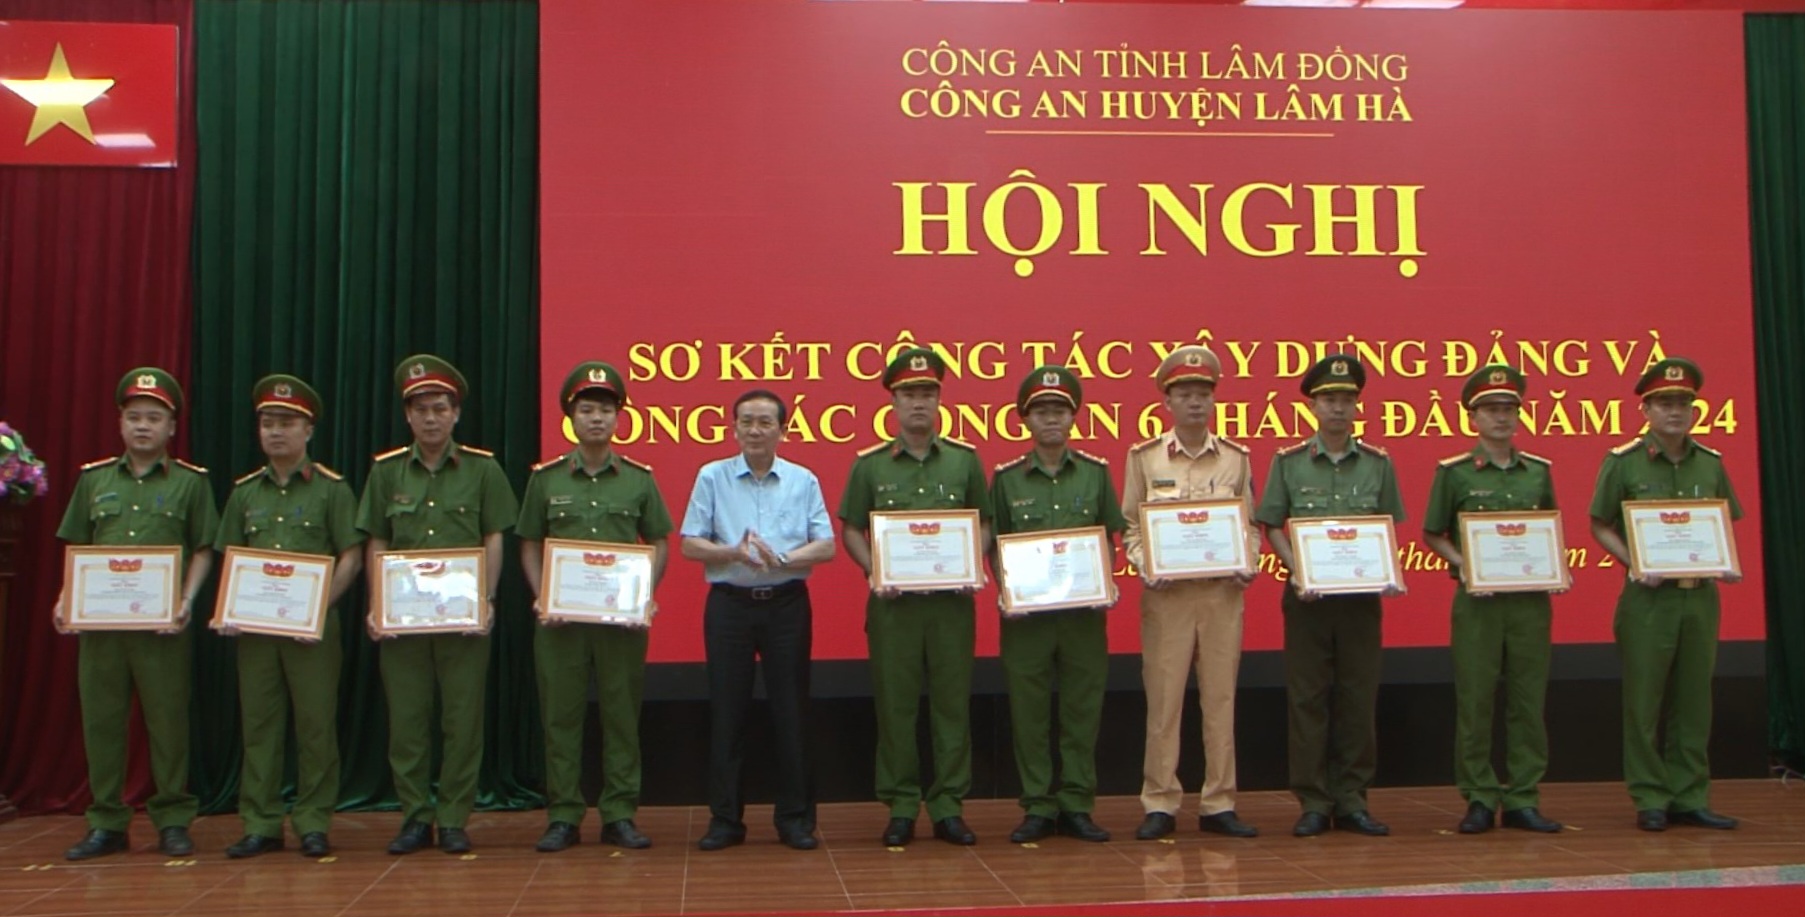 Đồng chí Nguyễn Văn Hoàng - Chủ tịch UBND huyện Lâm Hà trao giấy khen cho các tập thể, cá nhân